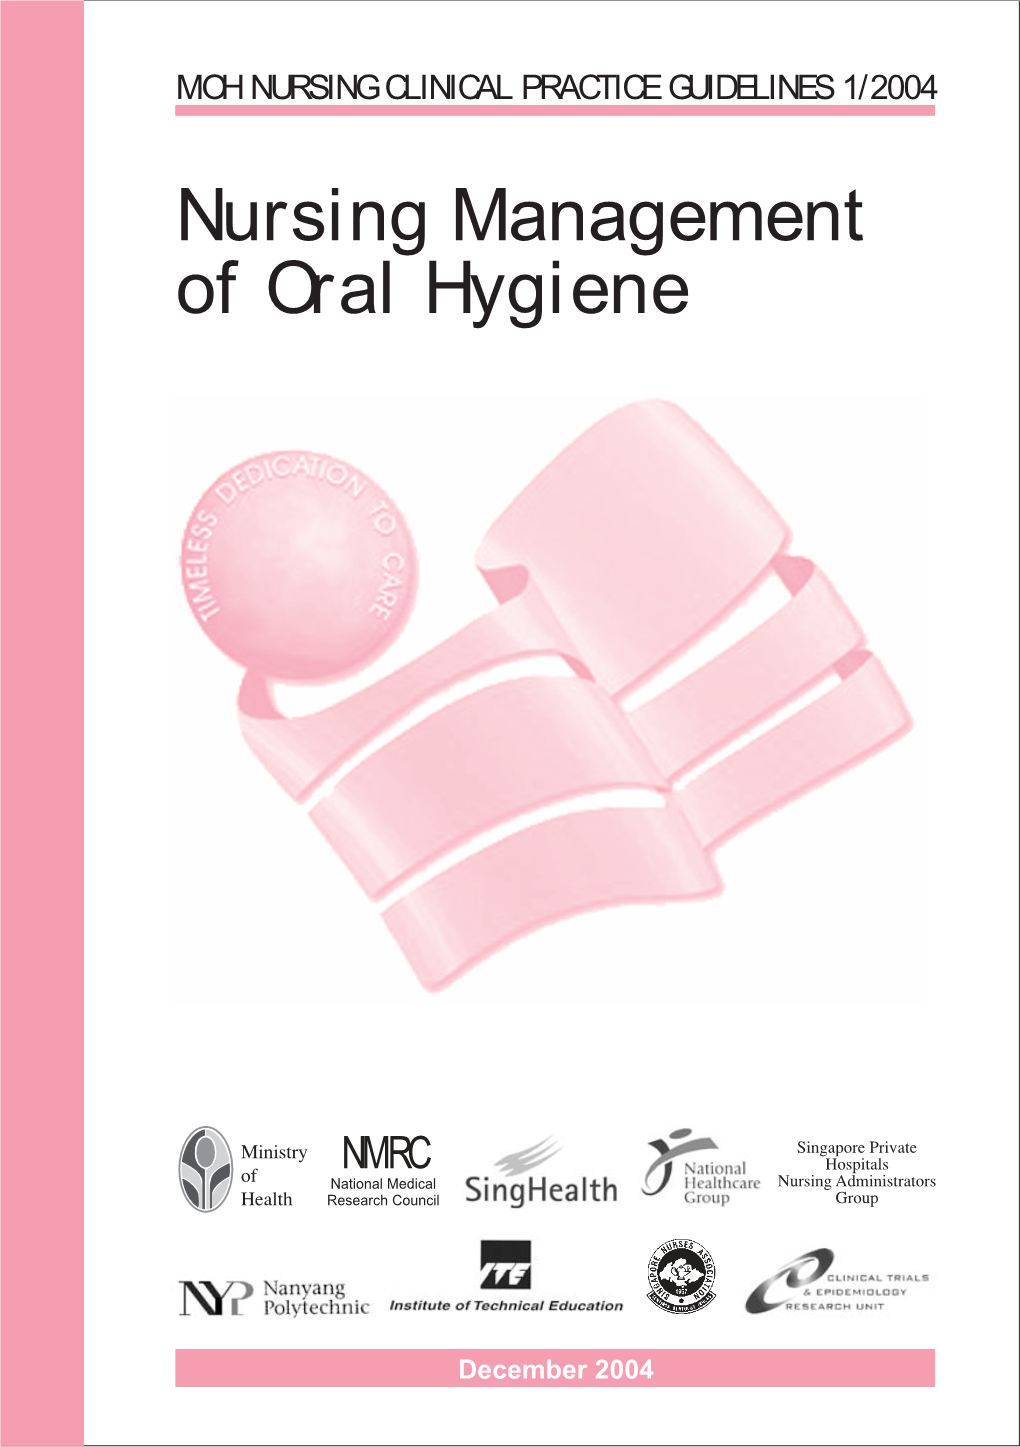 Nursing Management of Oral Hygiene